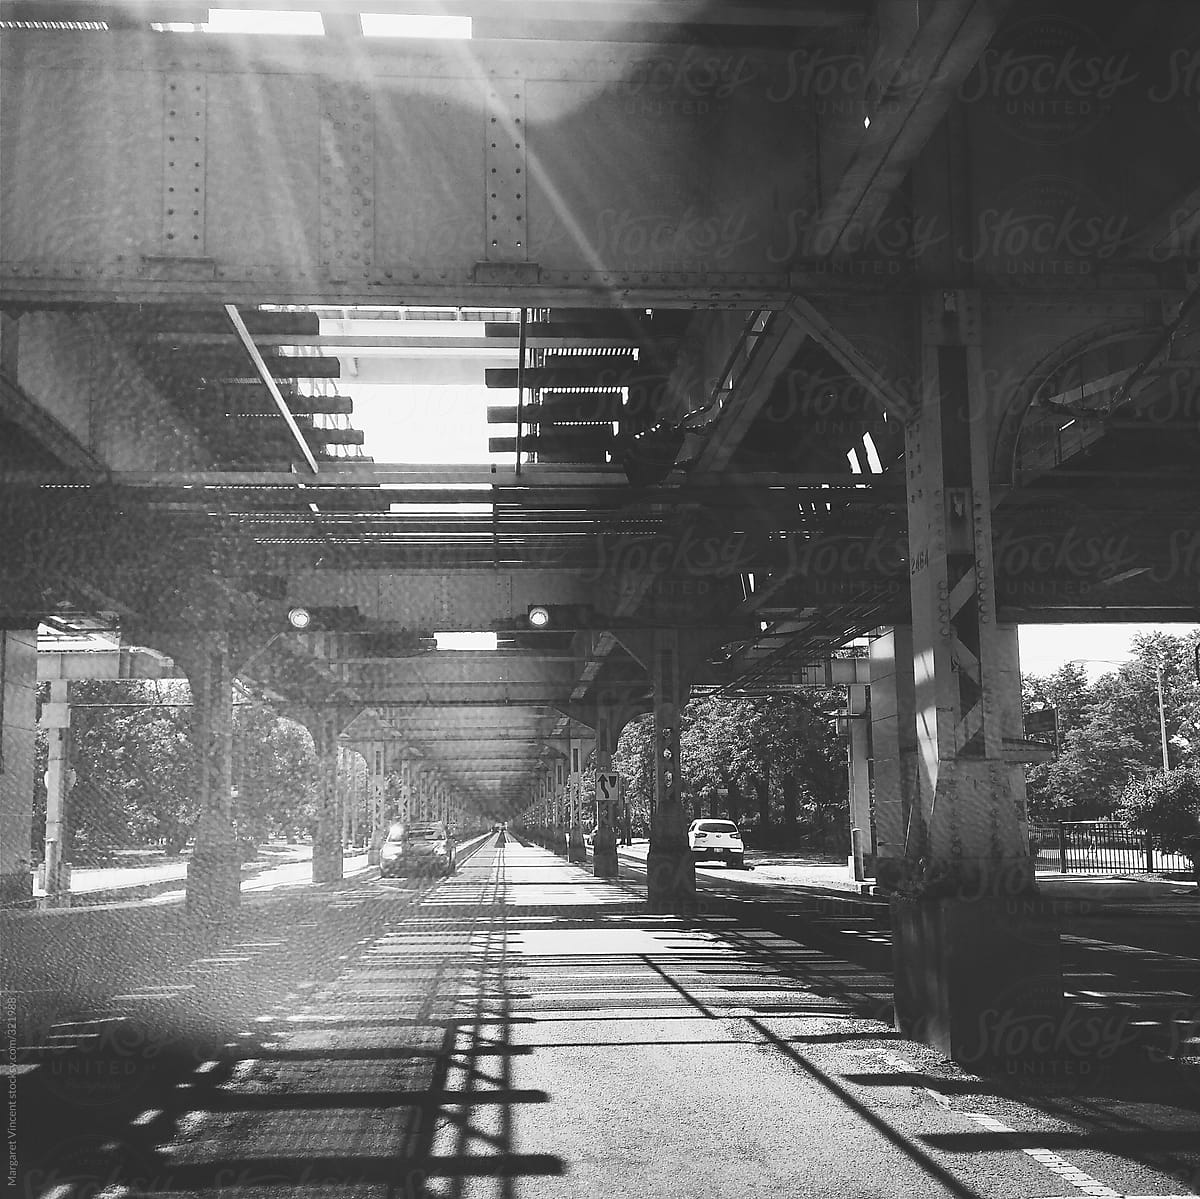 under the el tracks